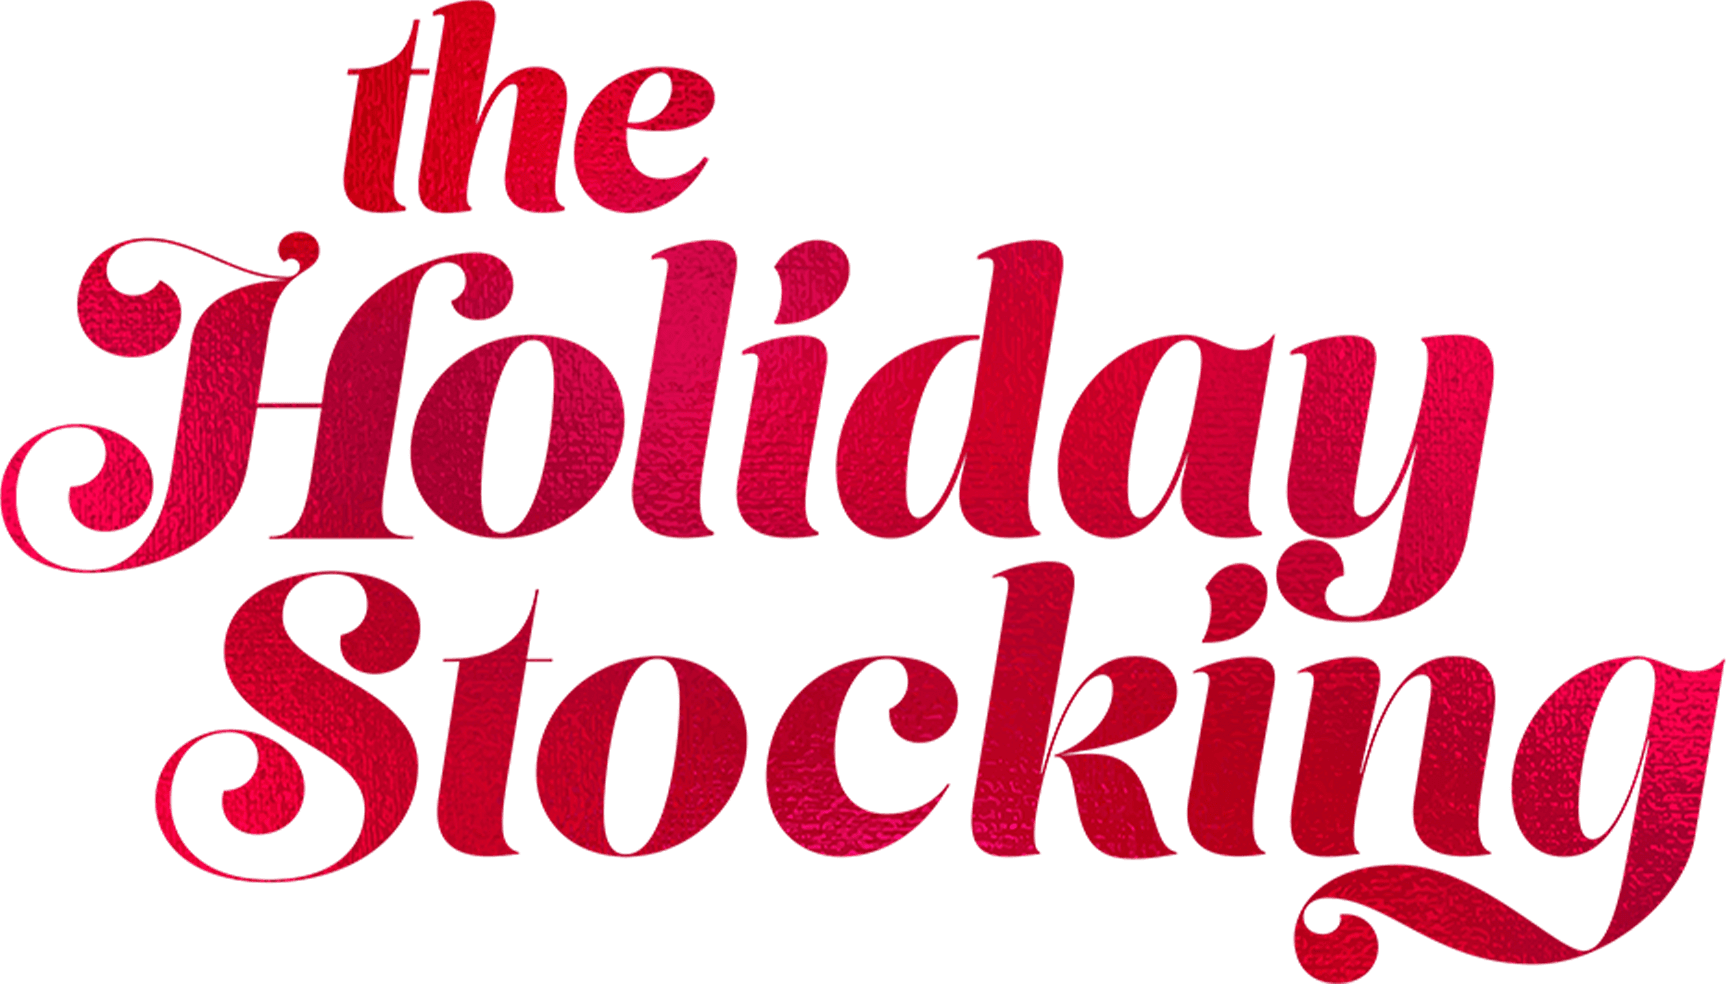 The Holiday Stocking logo